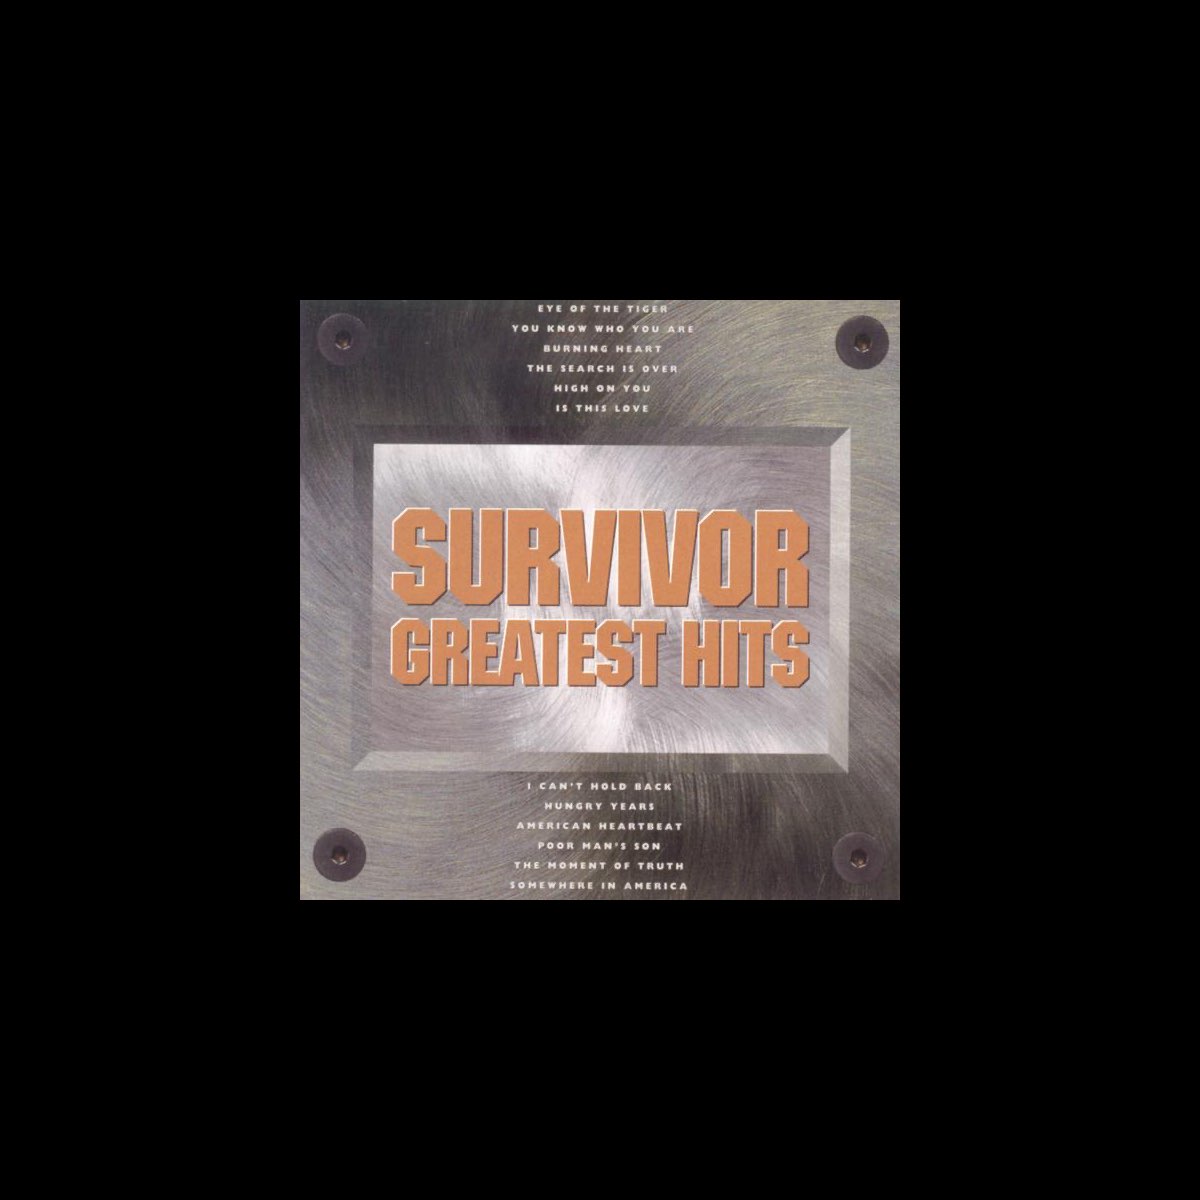 Survivor - Burning Heart (Video) 